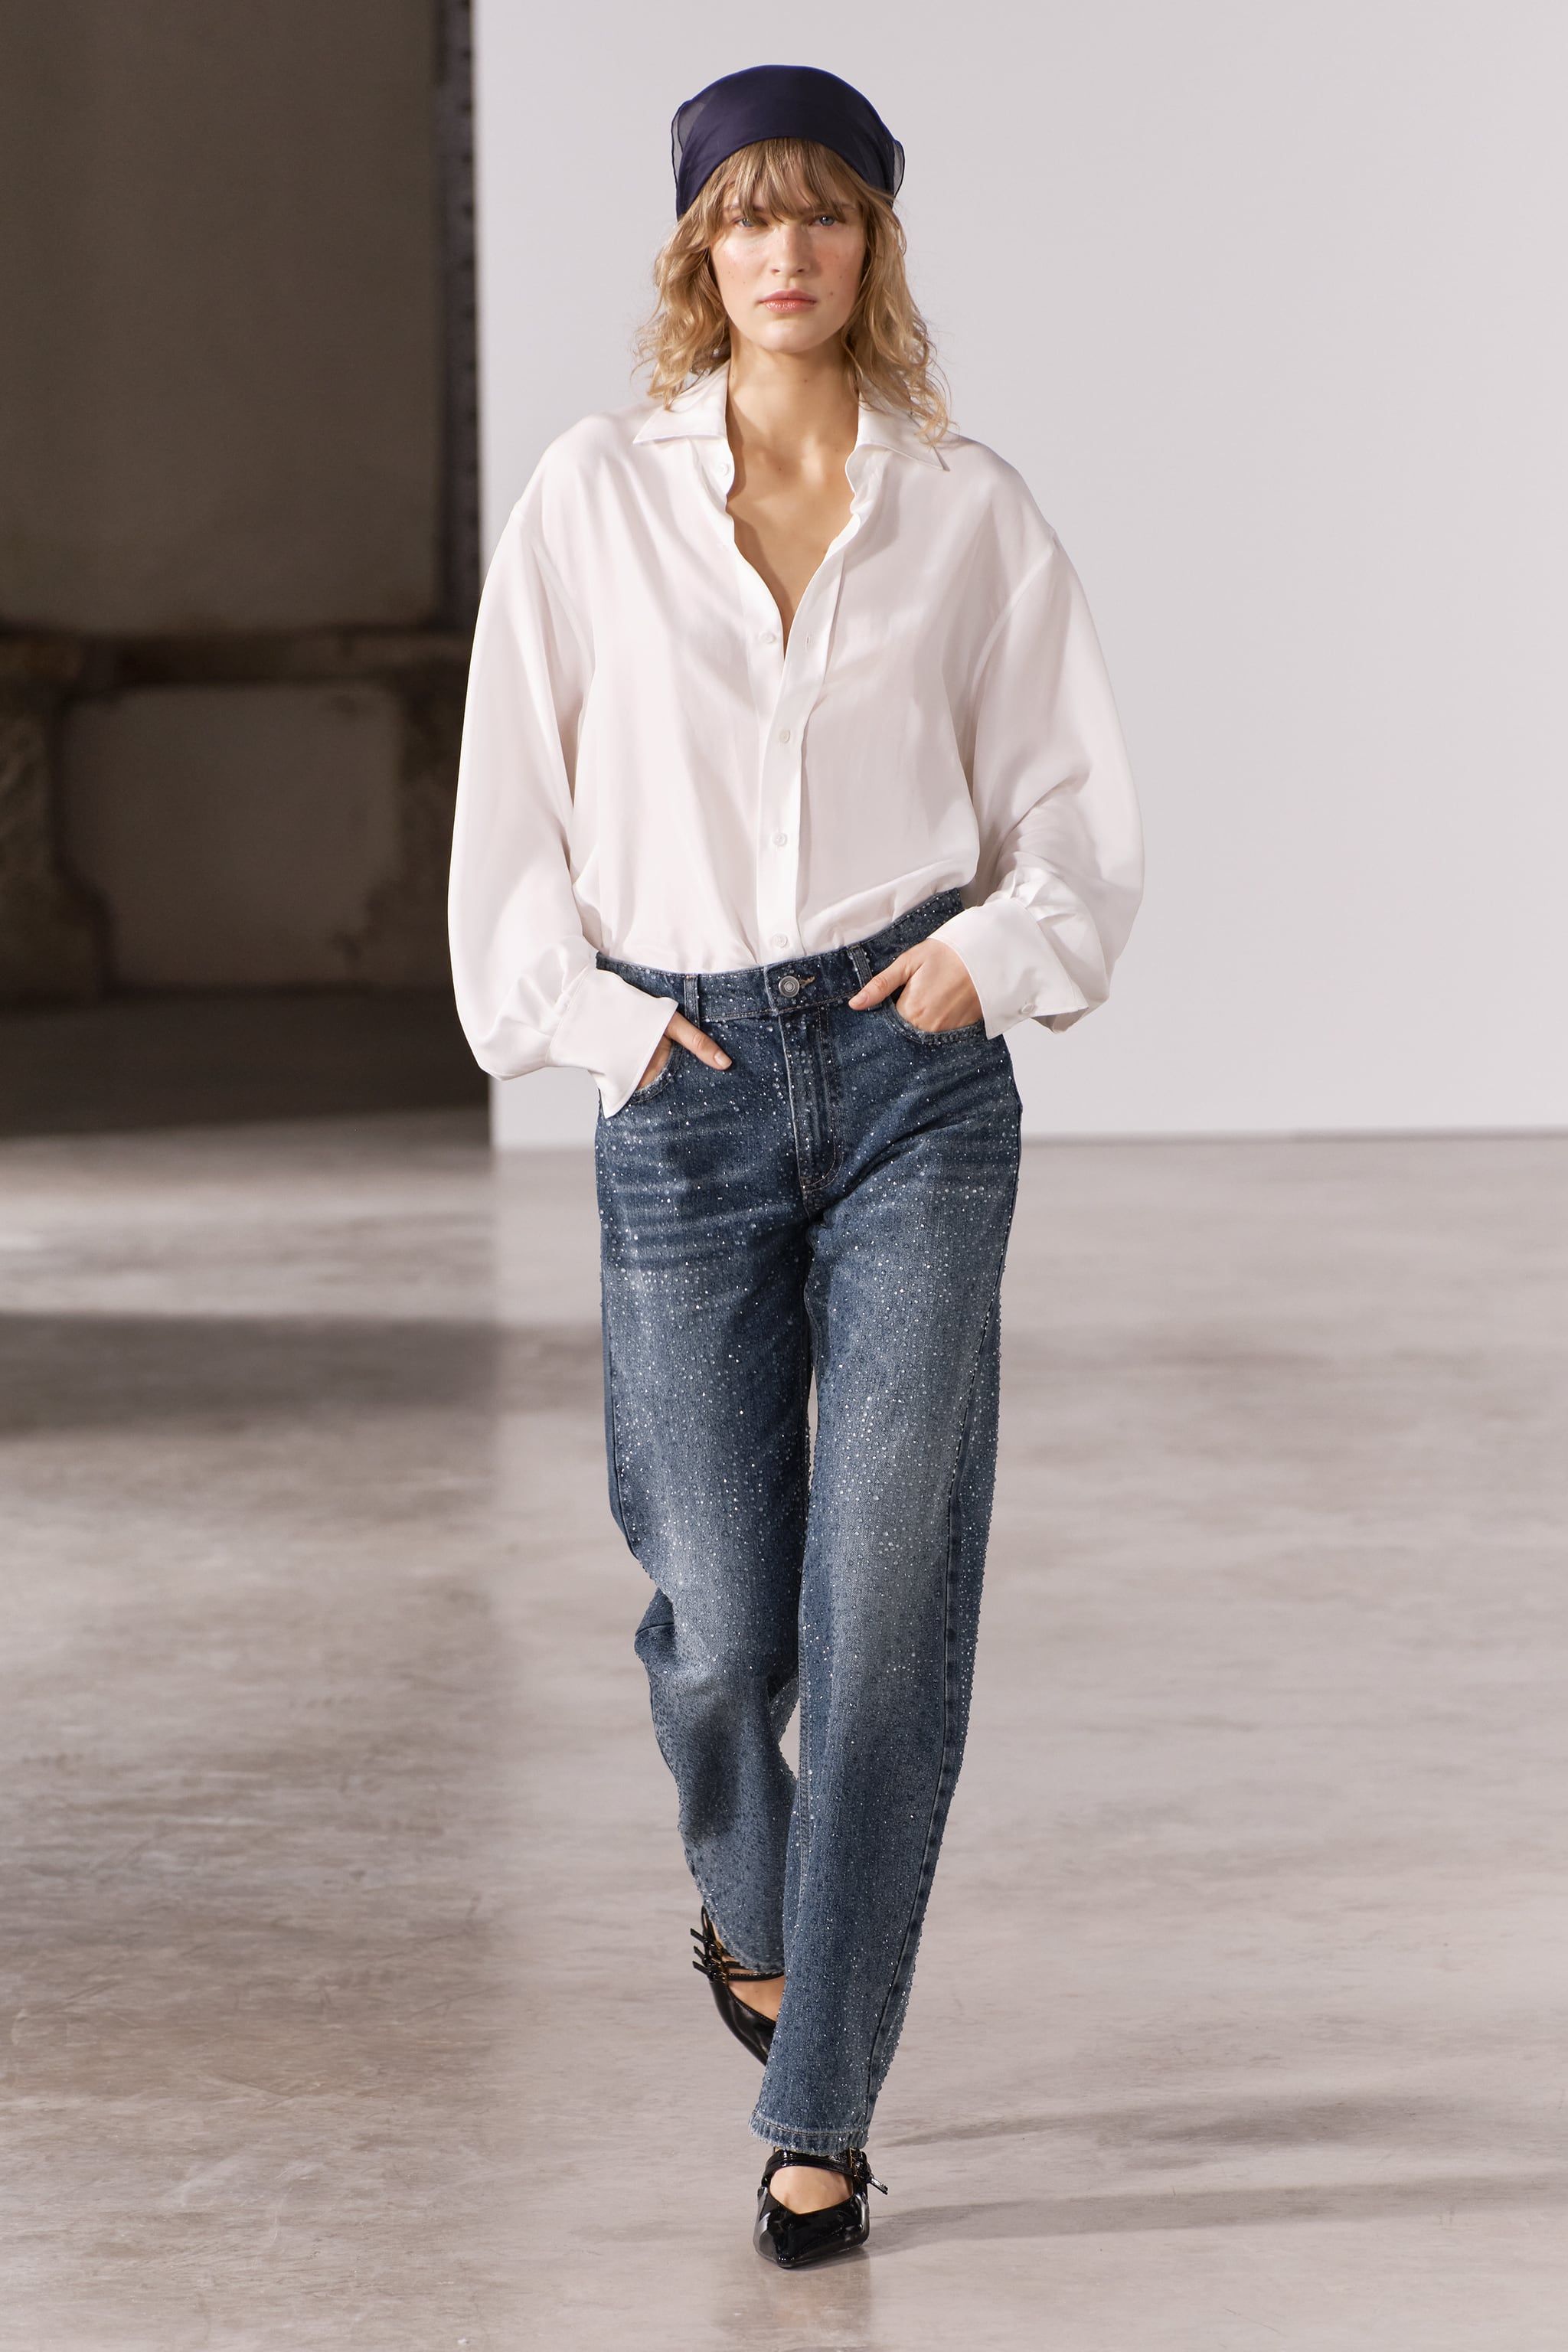 Zara inventa los pantalones vaqueros de sirena, los jeans de mujer